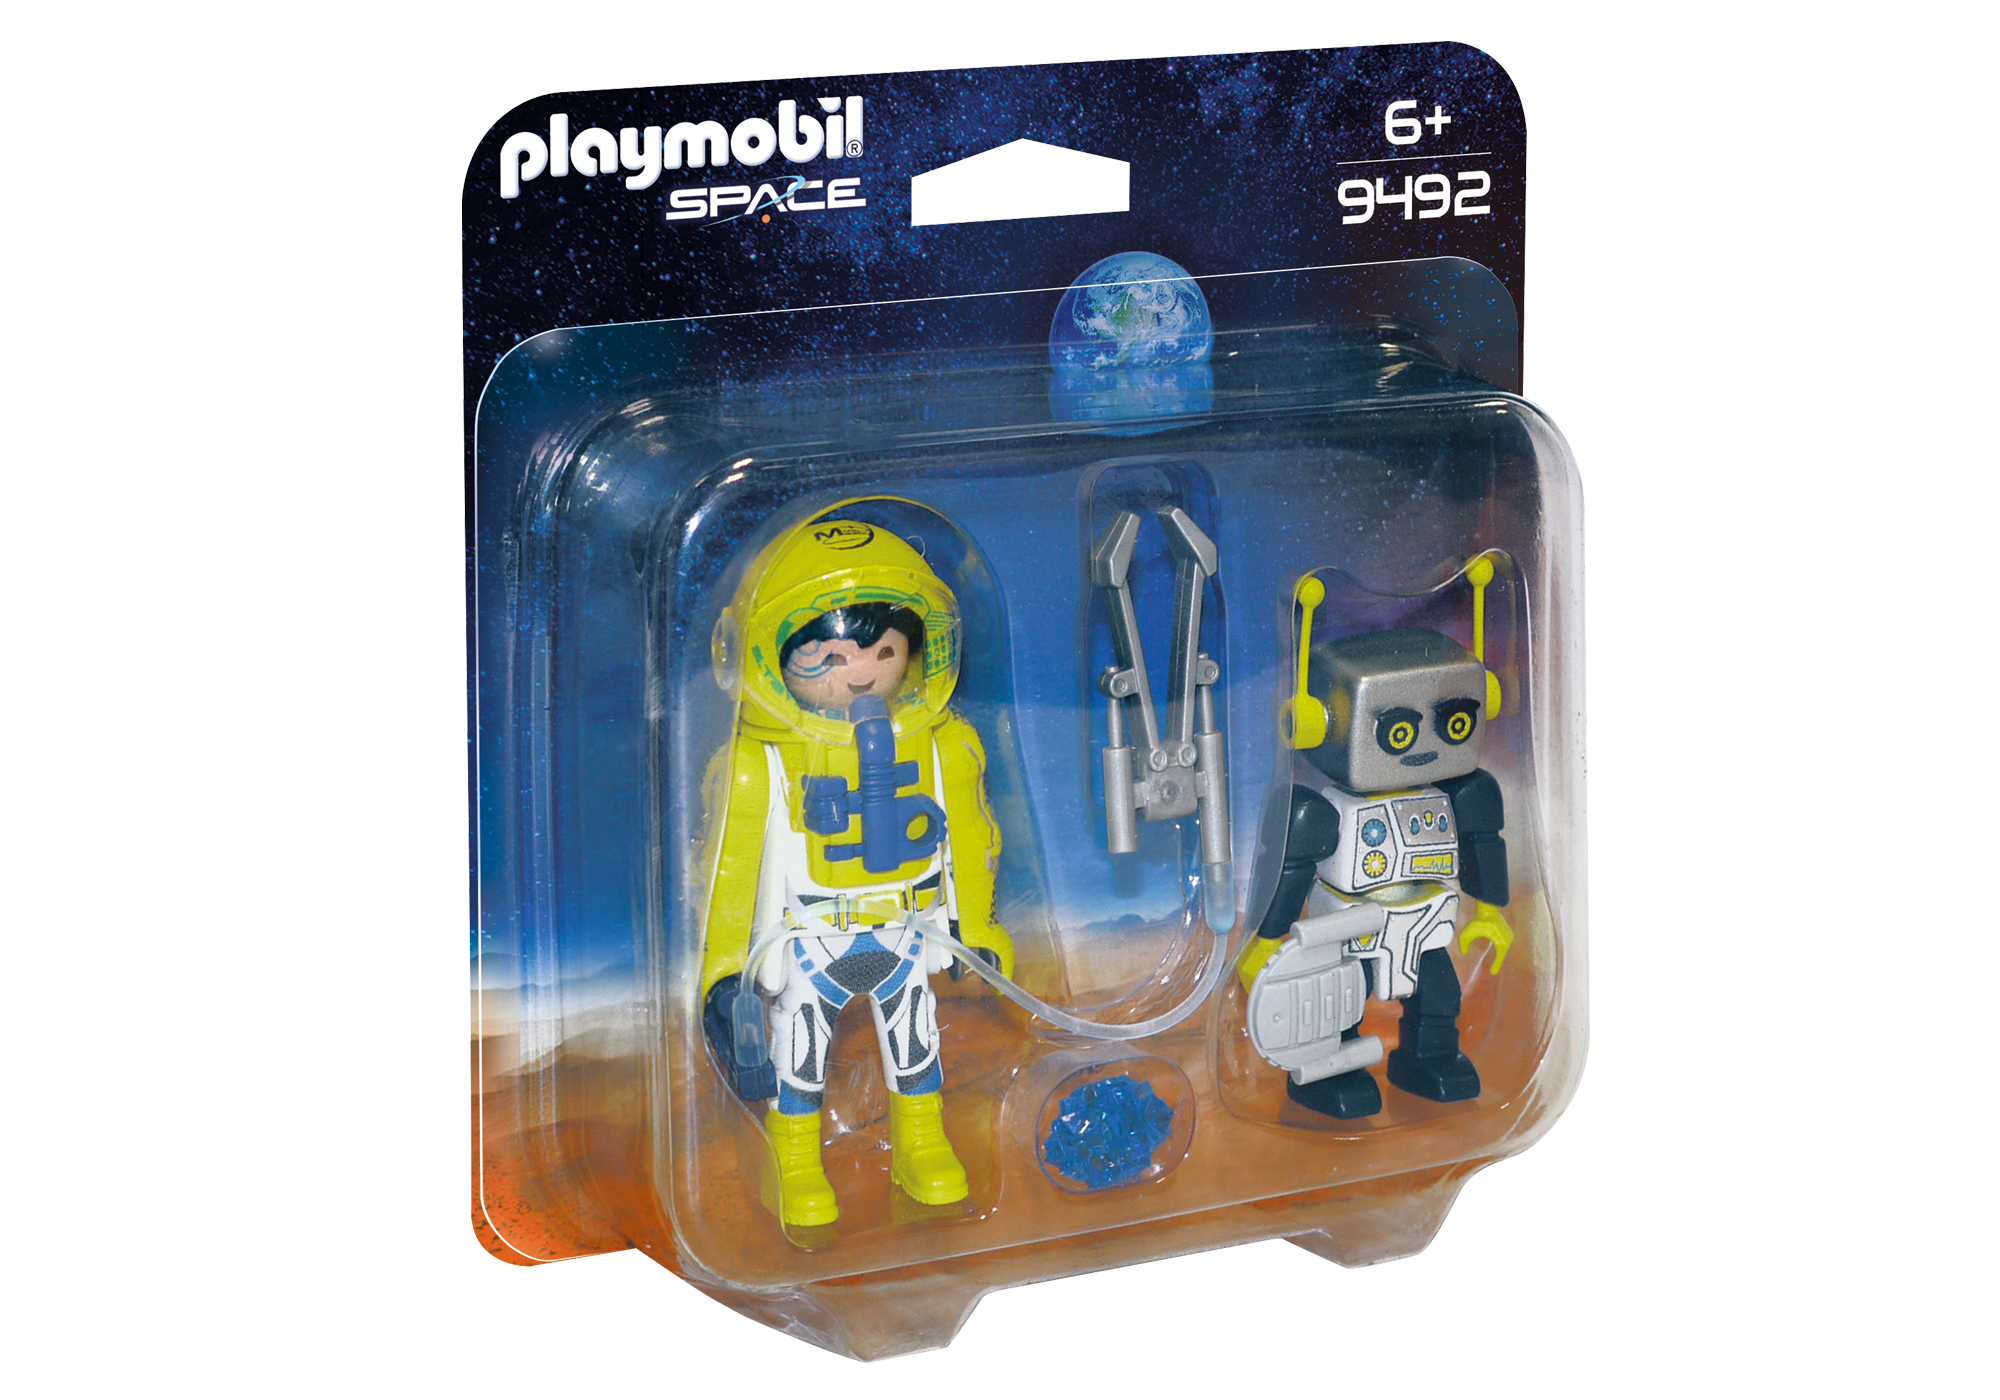 Playmobil Space 2018 9492_product_box_front?locale=de-DE,de,*&$pdp_product_main_xl$&strip=true